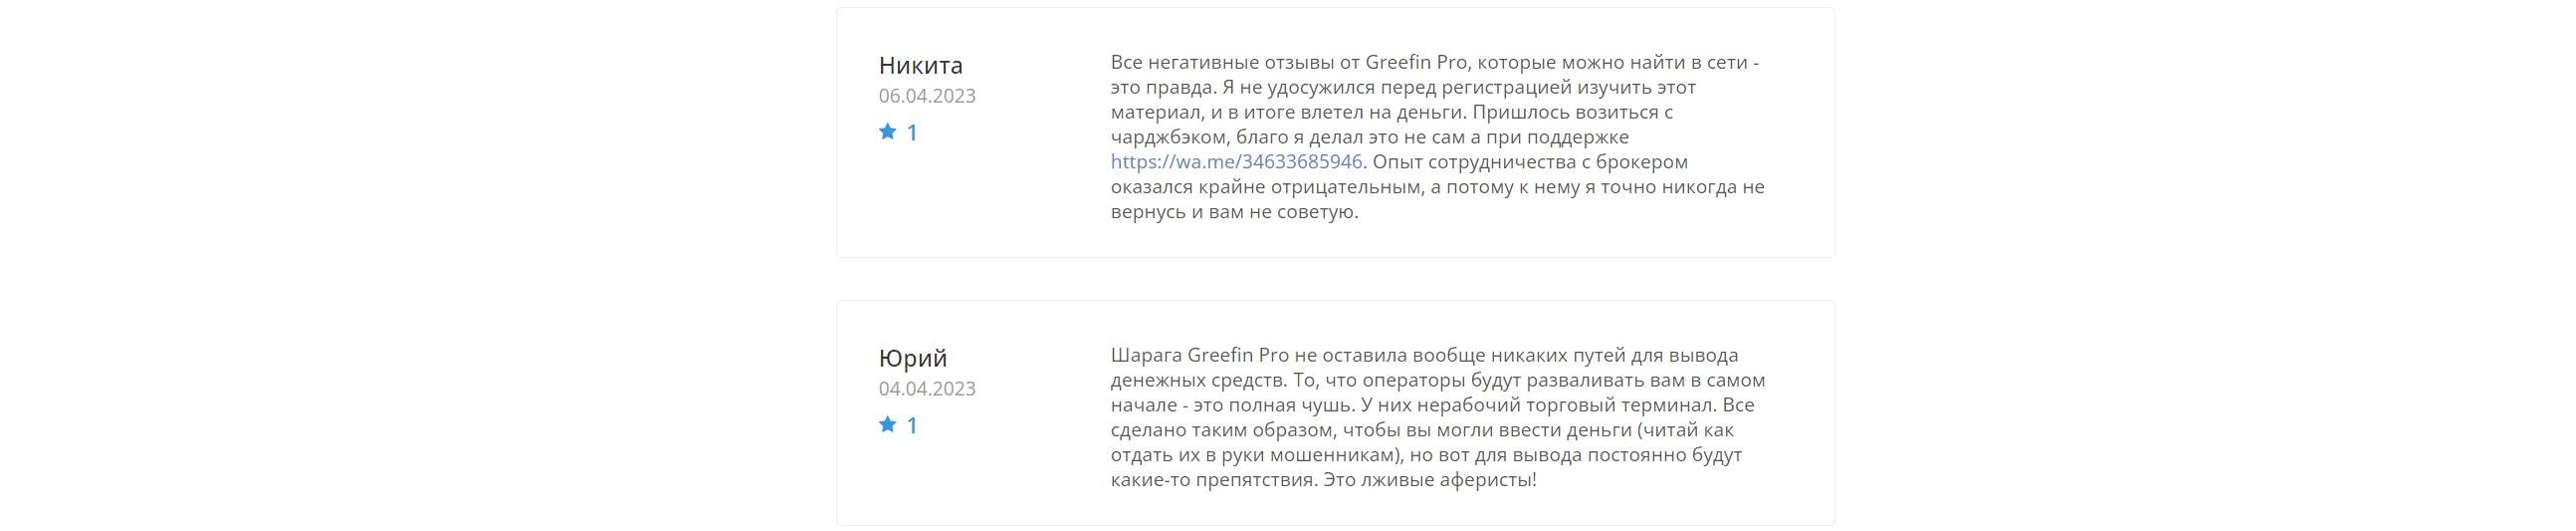 Greefin Pro: обманные манипуляции и уловки форекс-мошенника. Реальные отзывы пользователей платформы